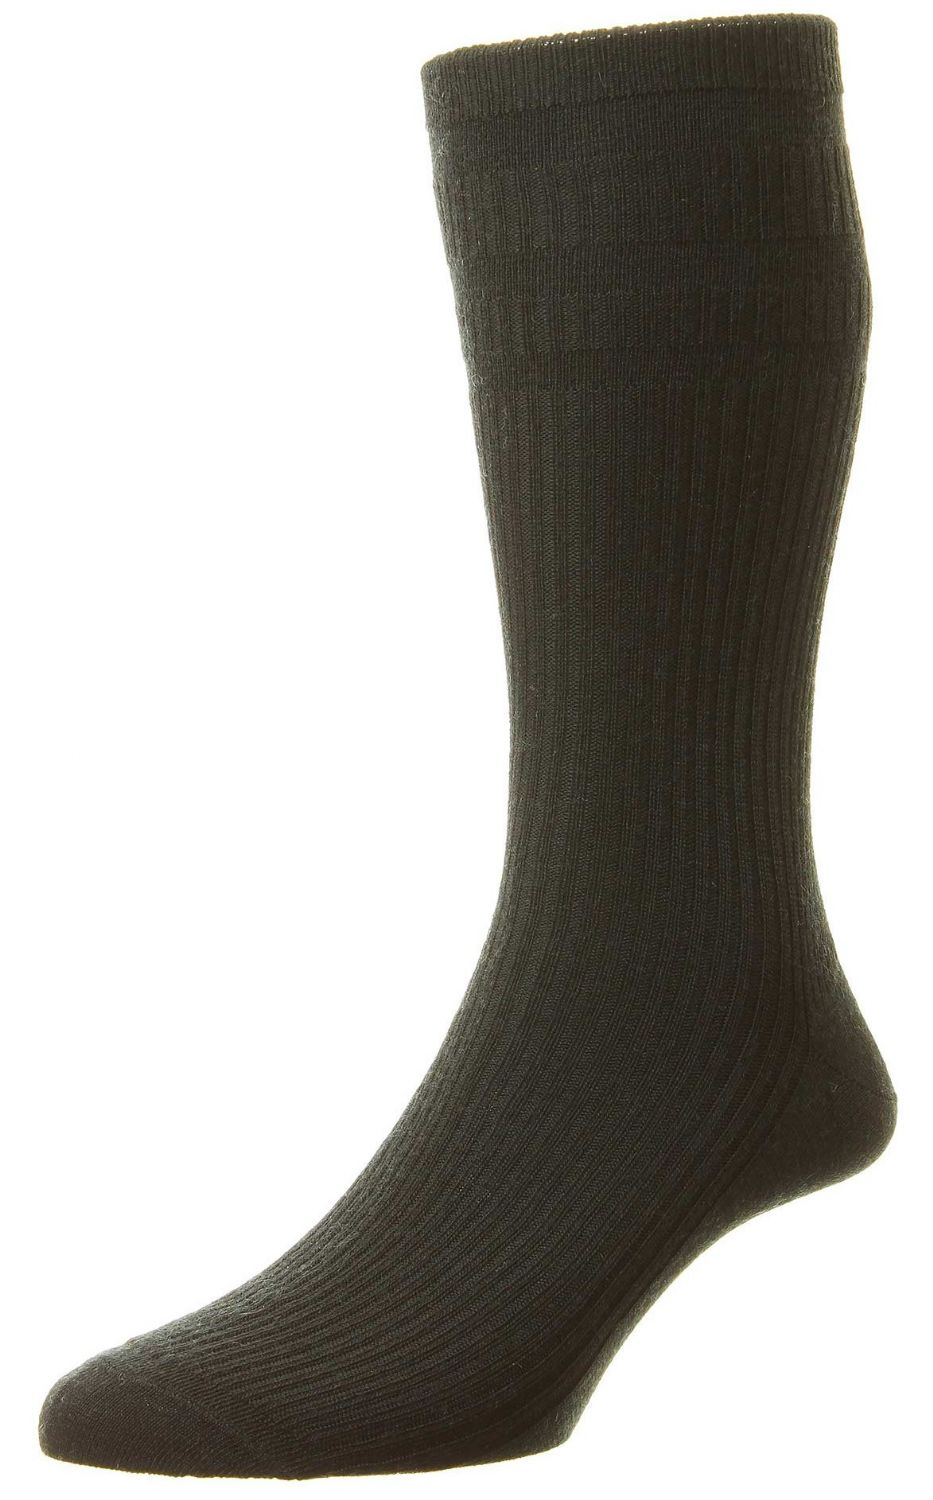 HJ Socks HJ190 Navy Shoe size 6-11